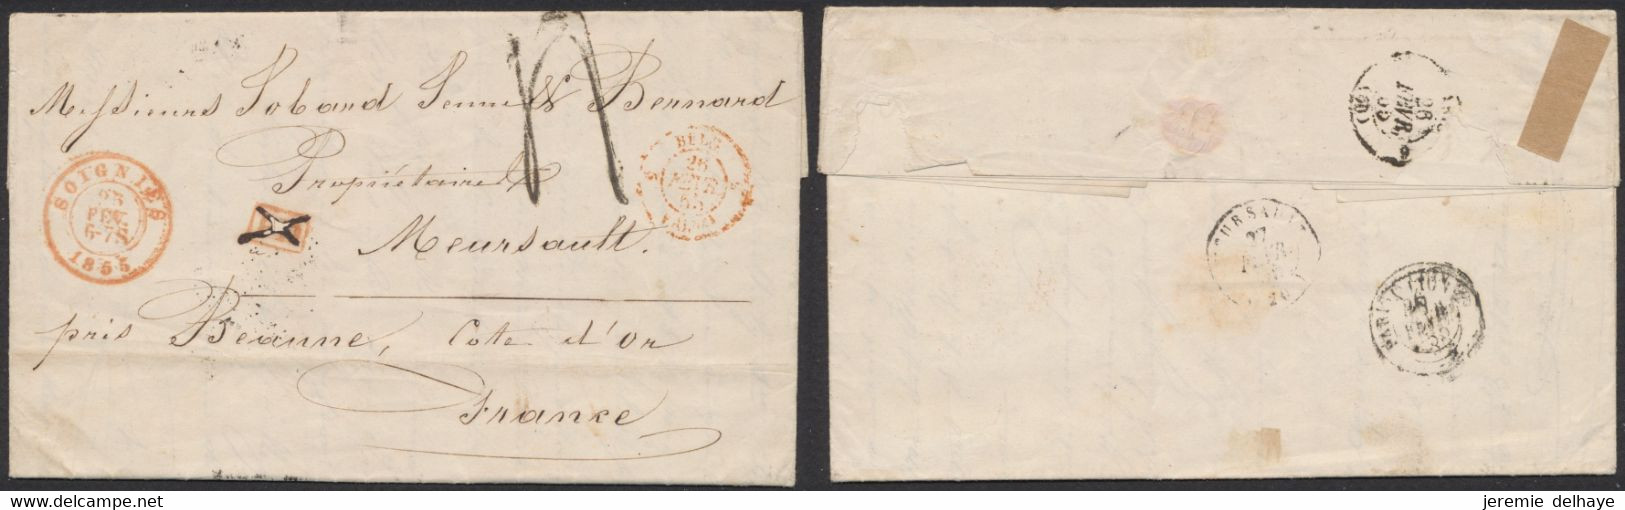 LAC Non Affranchie + Cachet Dateur "Soignies" (1855) Griffe PD Annulé à La Plume, Port 4 Décimes > Meursault (France) - Poste Rurale